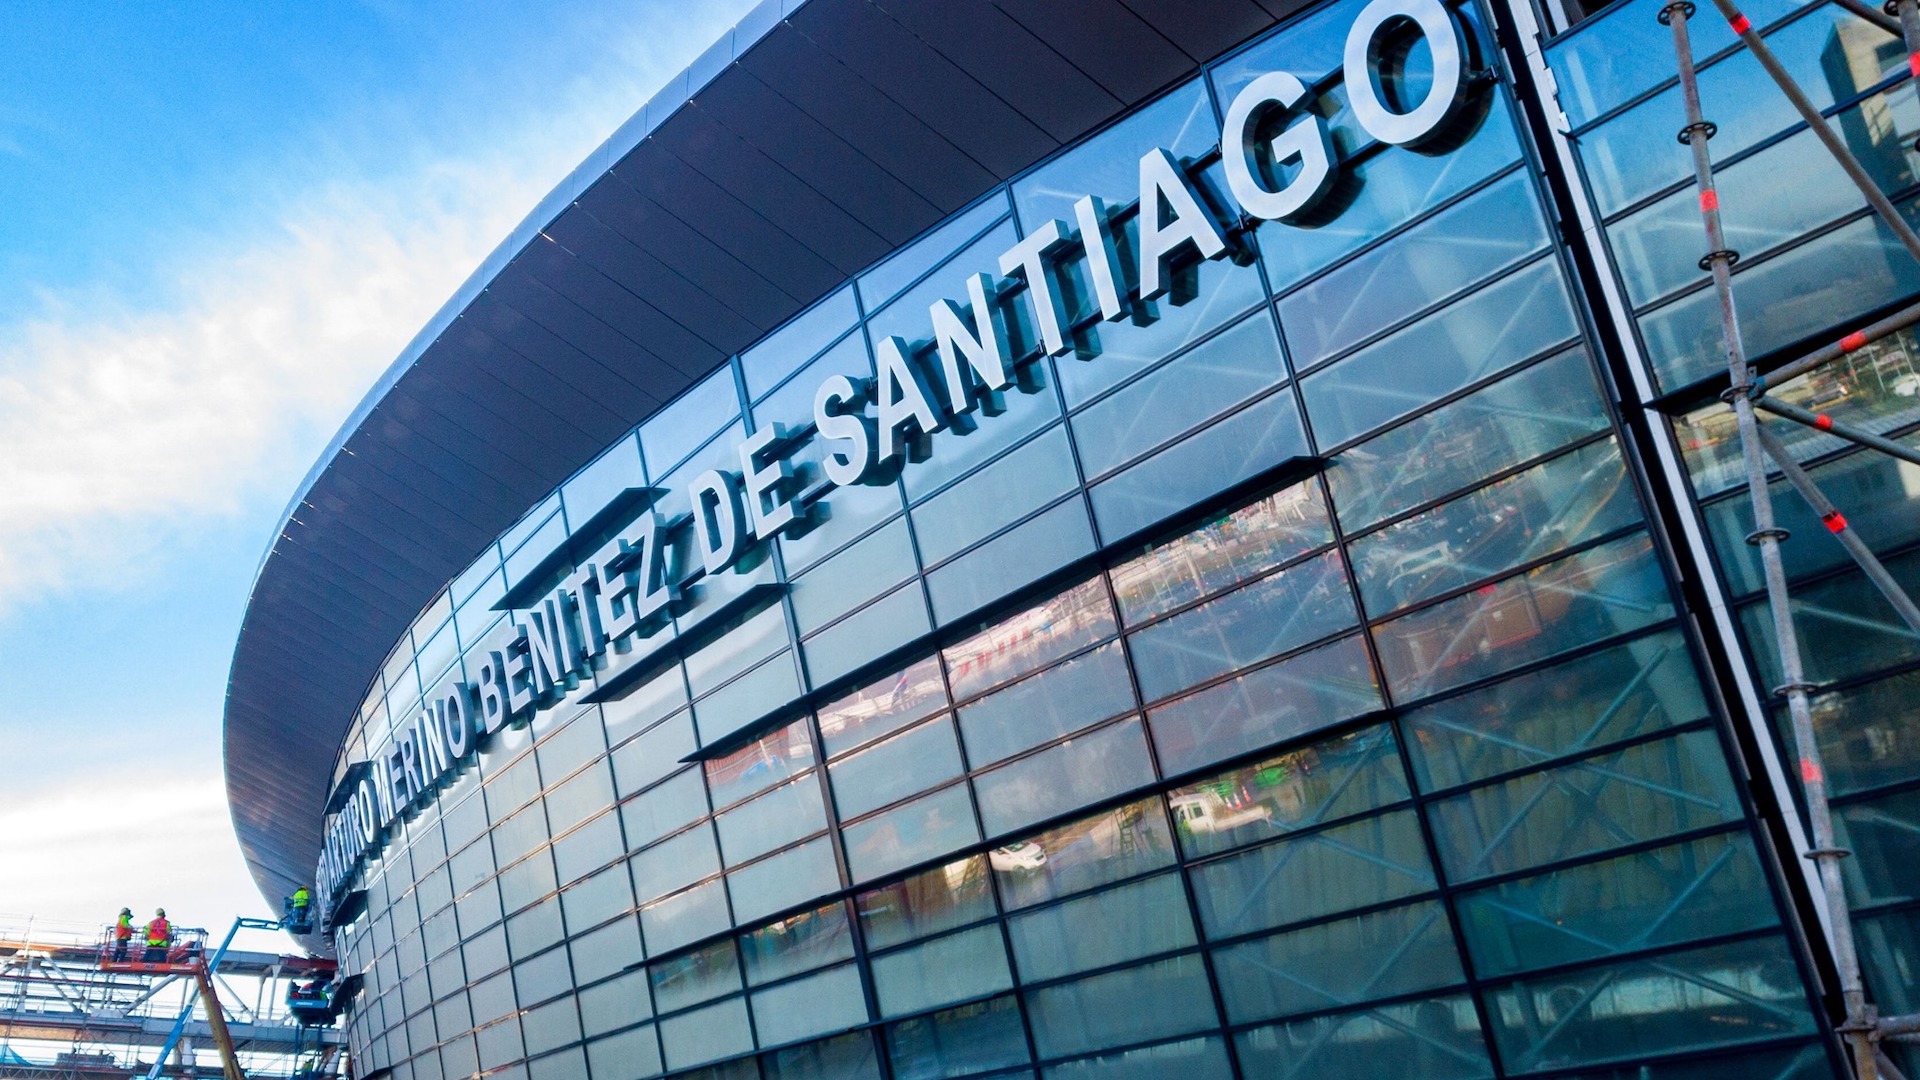 Solo tres aeropuertos se habilitan en Chile para el ingreso de extranjeros, uno de ellos es el de Santiago, la capital del país. Foto: Gentileza